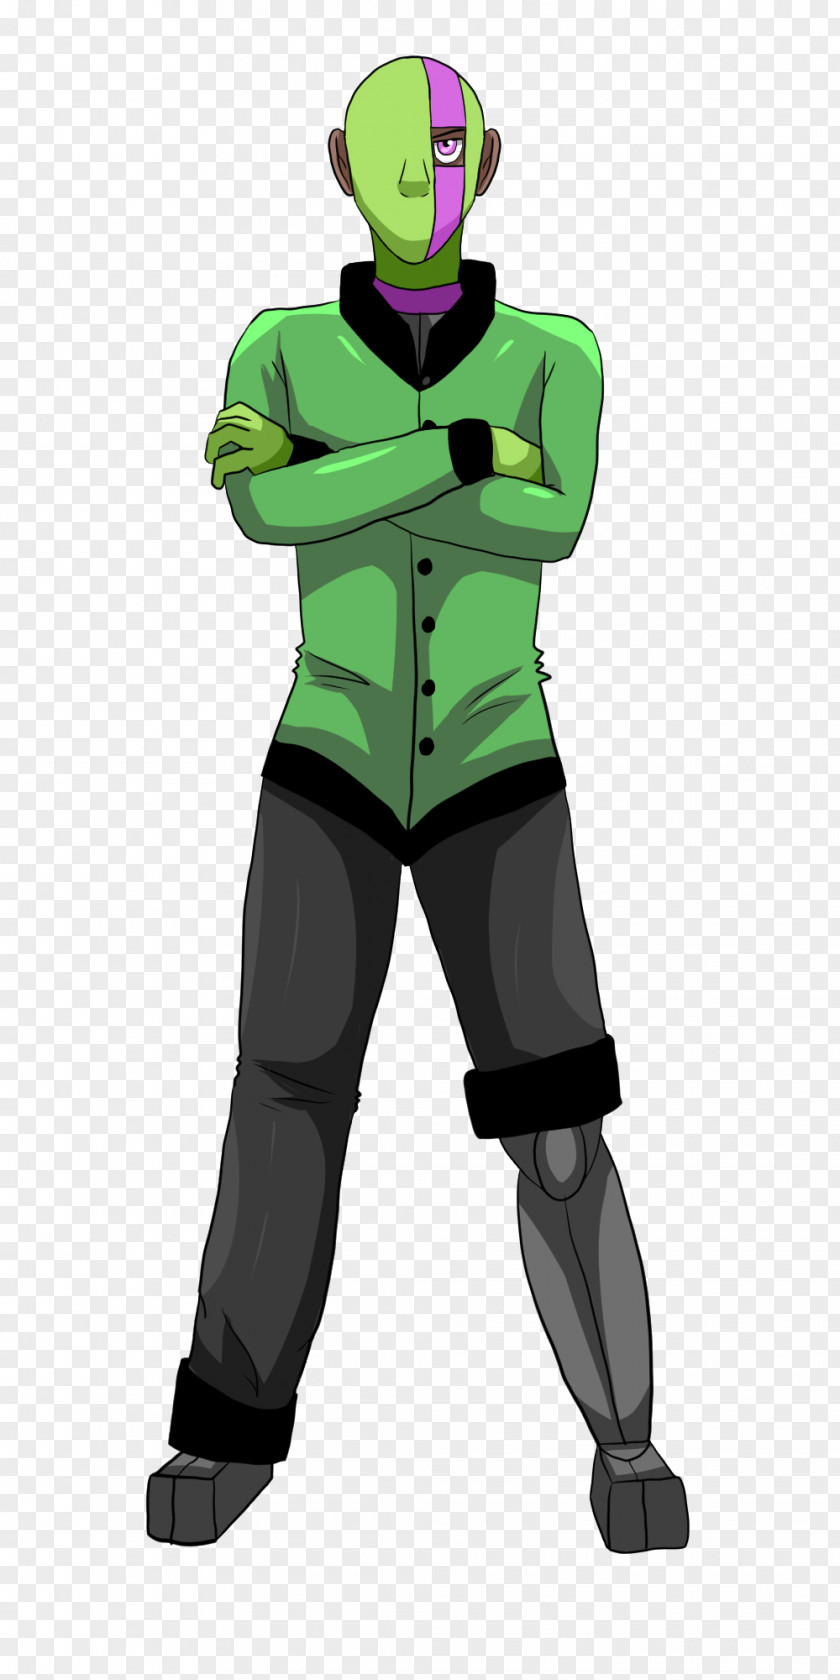 Formal Attire Animated Cartoon Illustration Green Headgear PNG